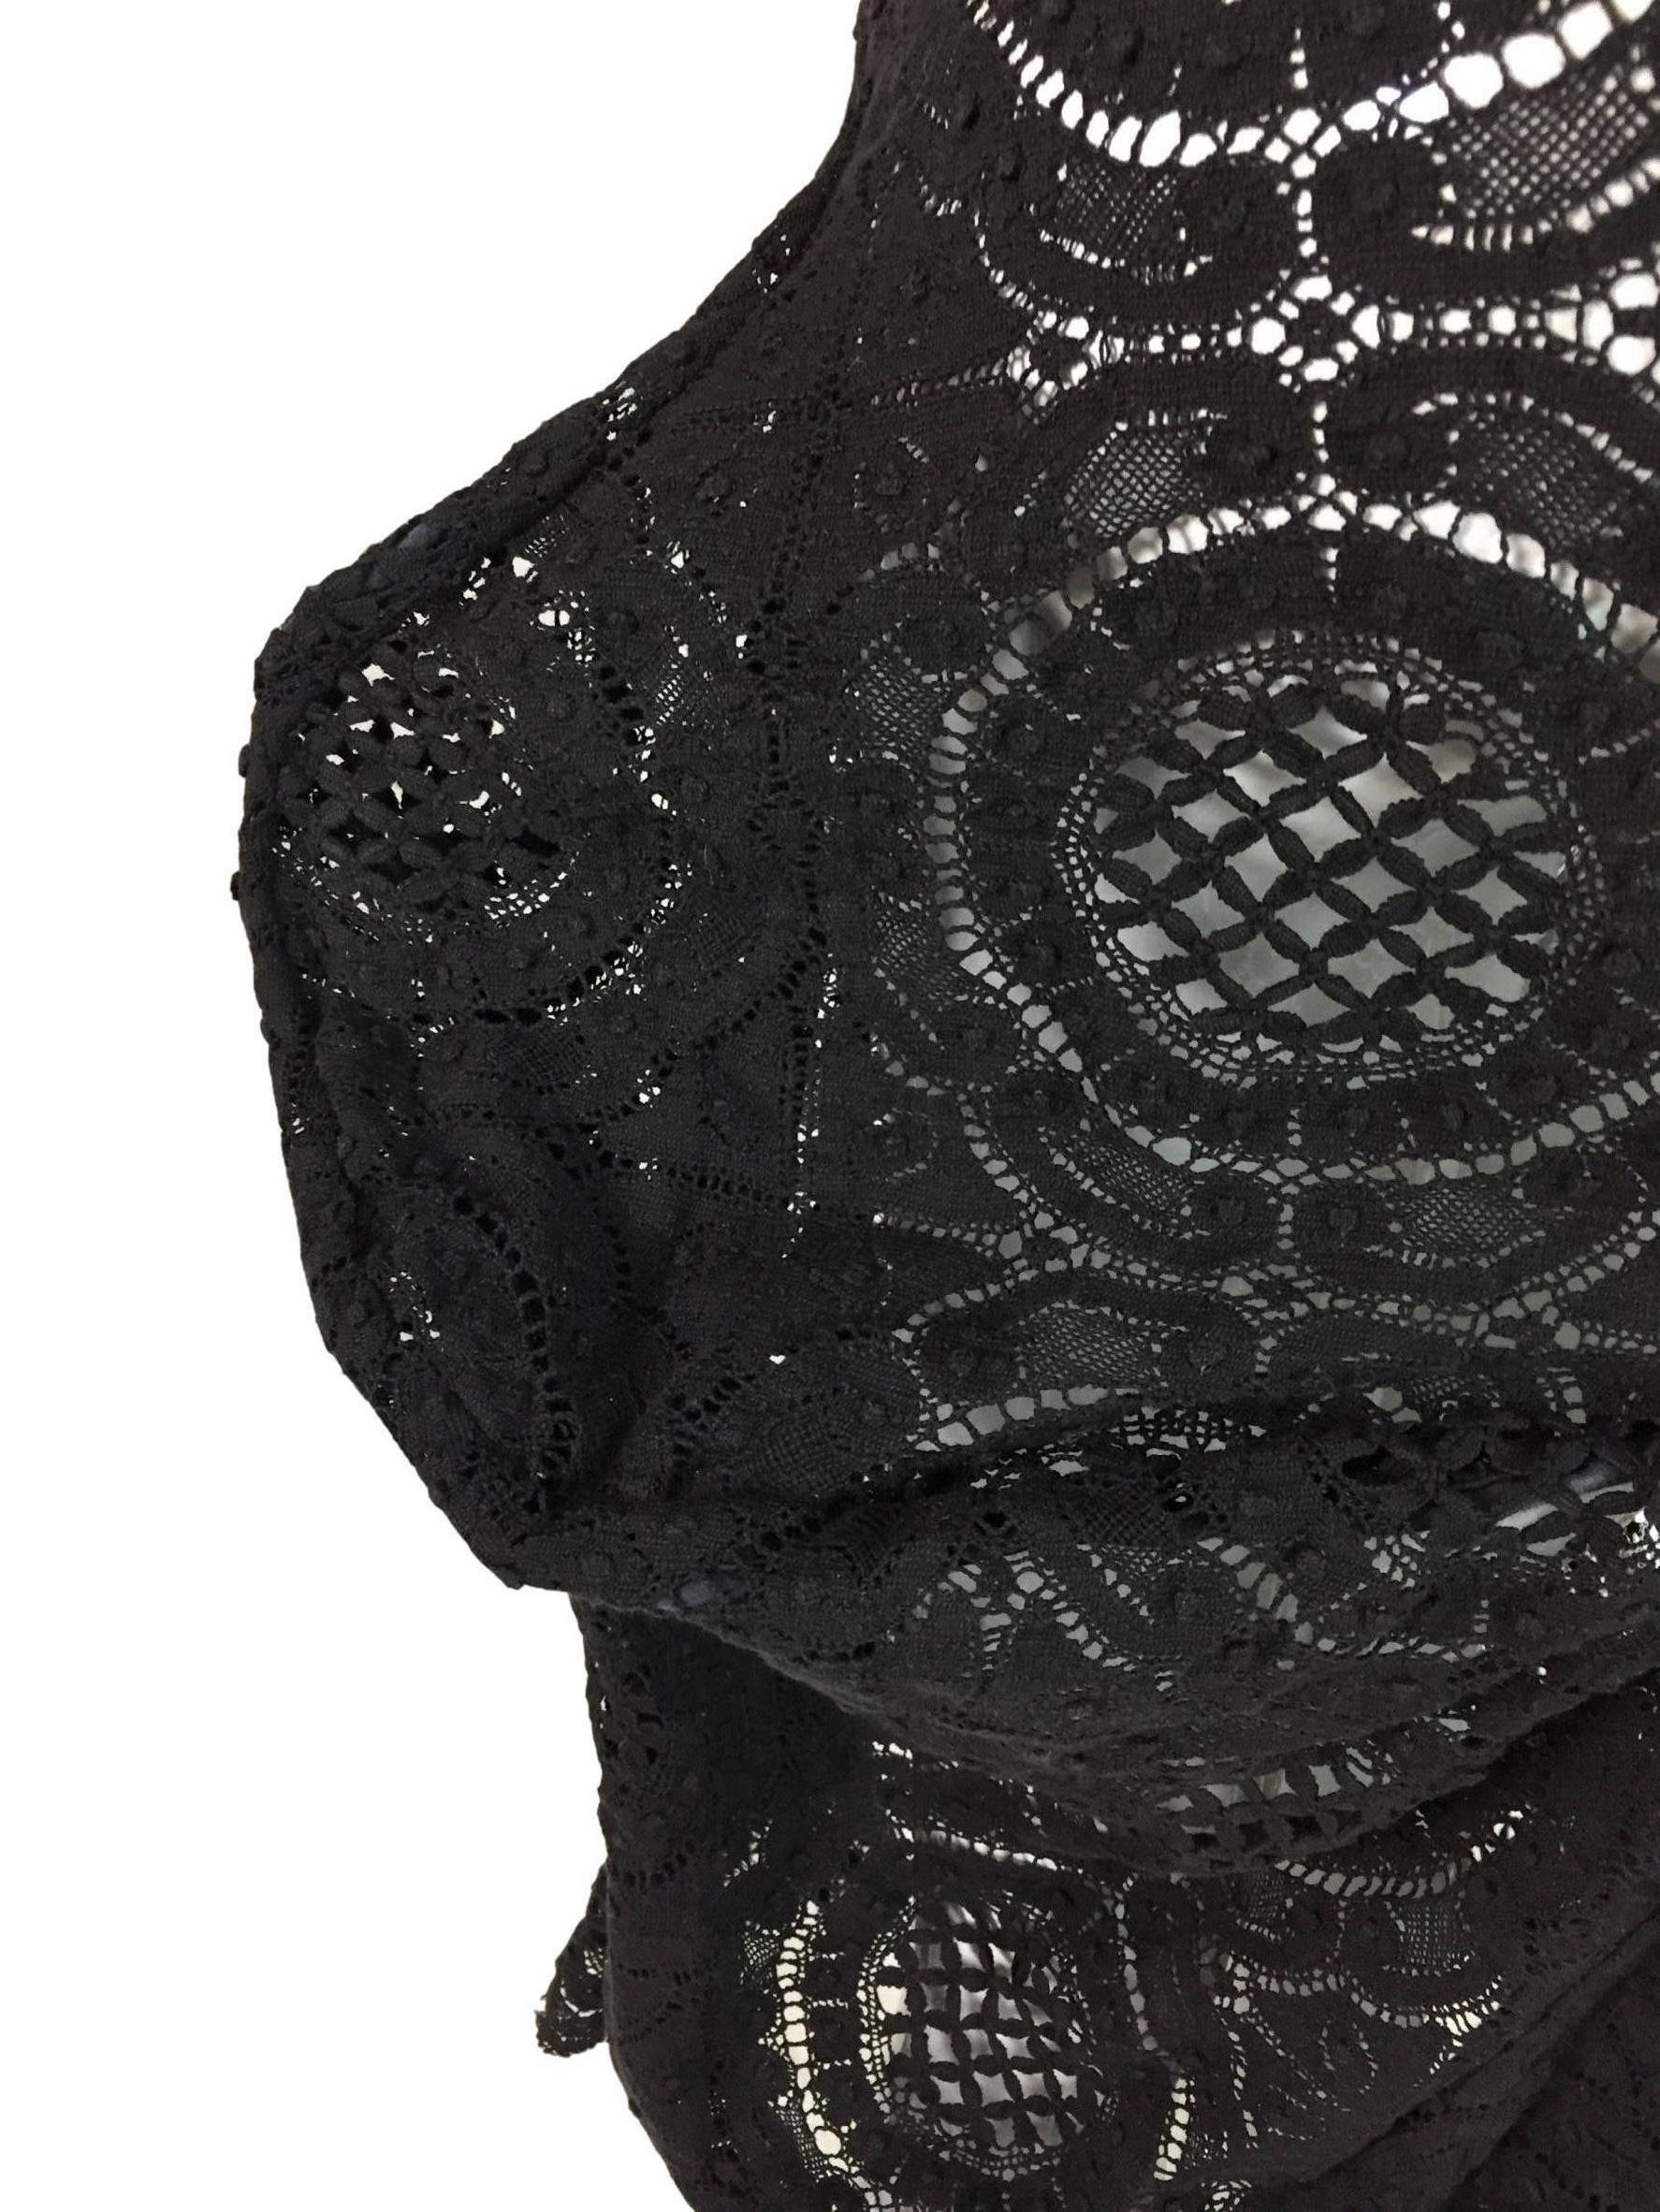 S/S 2002 Vivienne Westwood Couture OOAK Sheer Black Avant Garde Dress 4